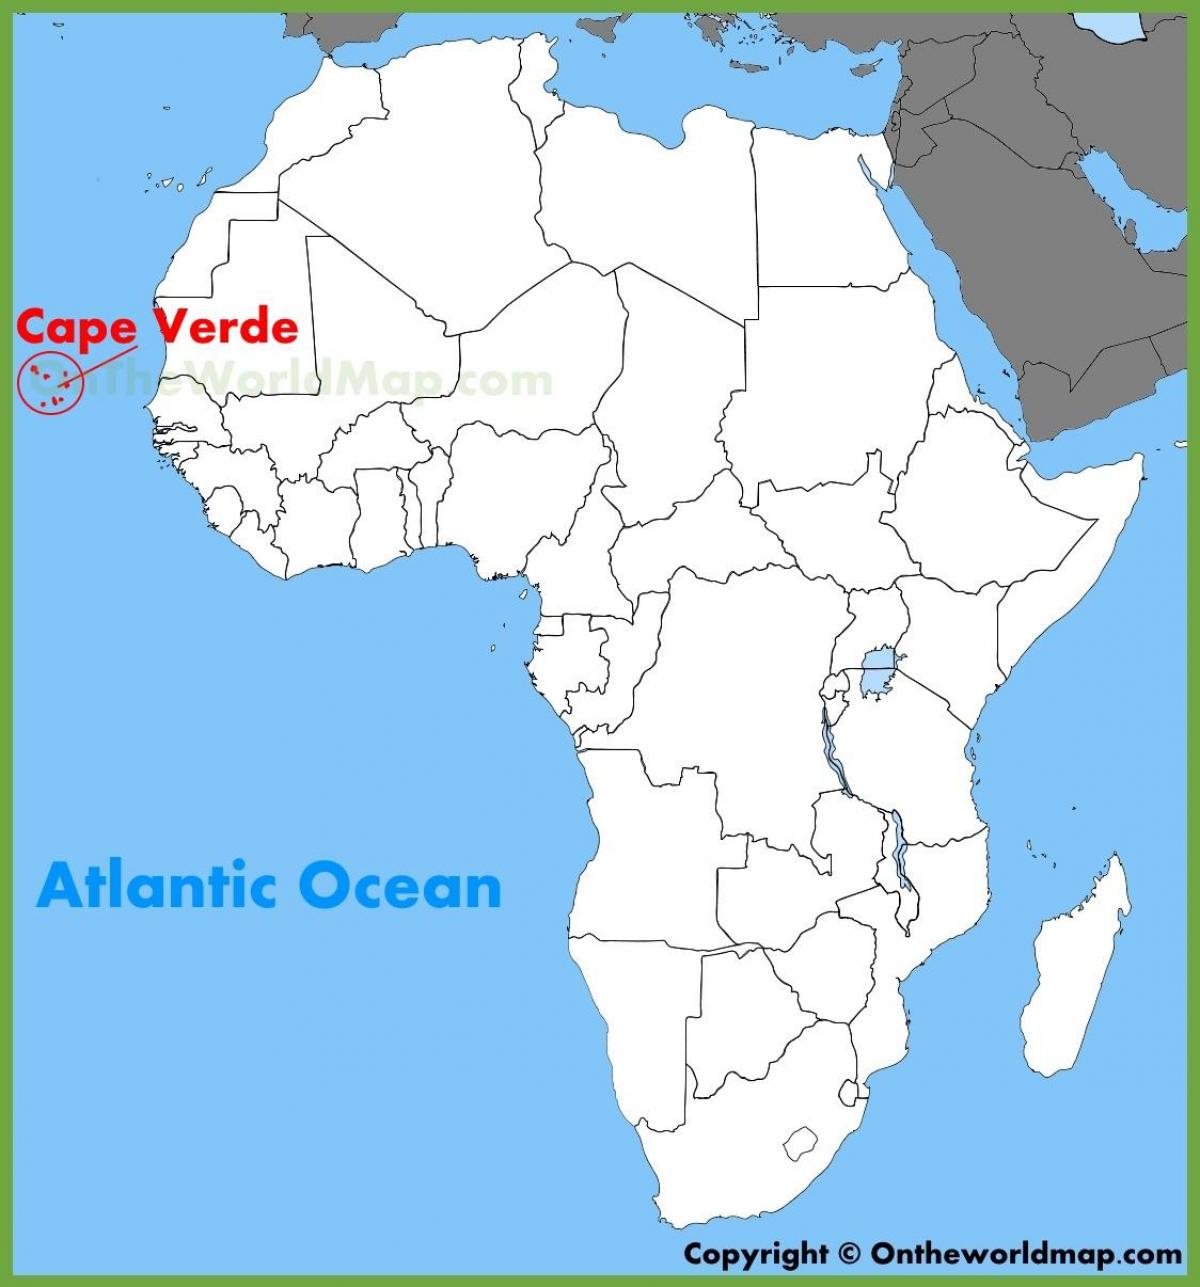 Sal Կաբո Վերդե քարտեզի վրա